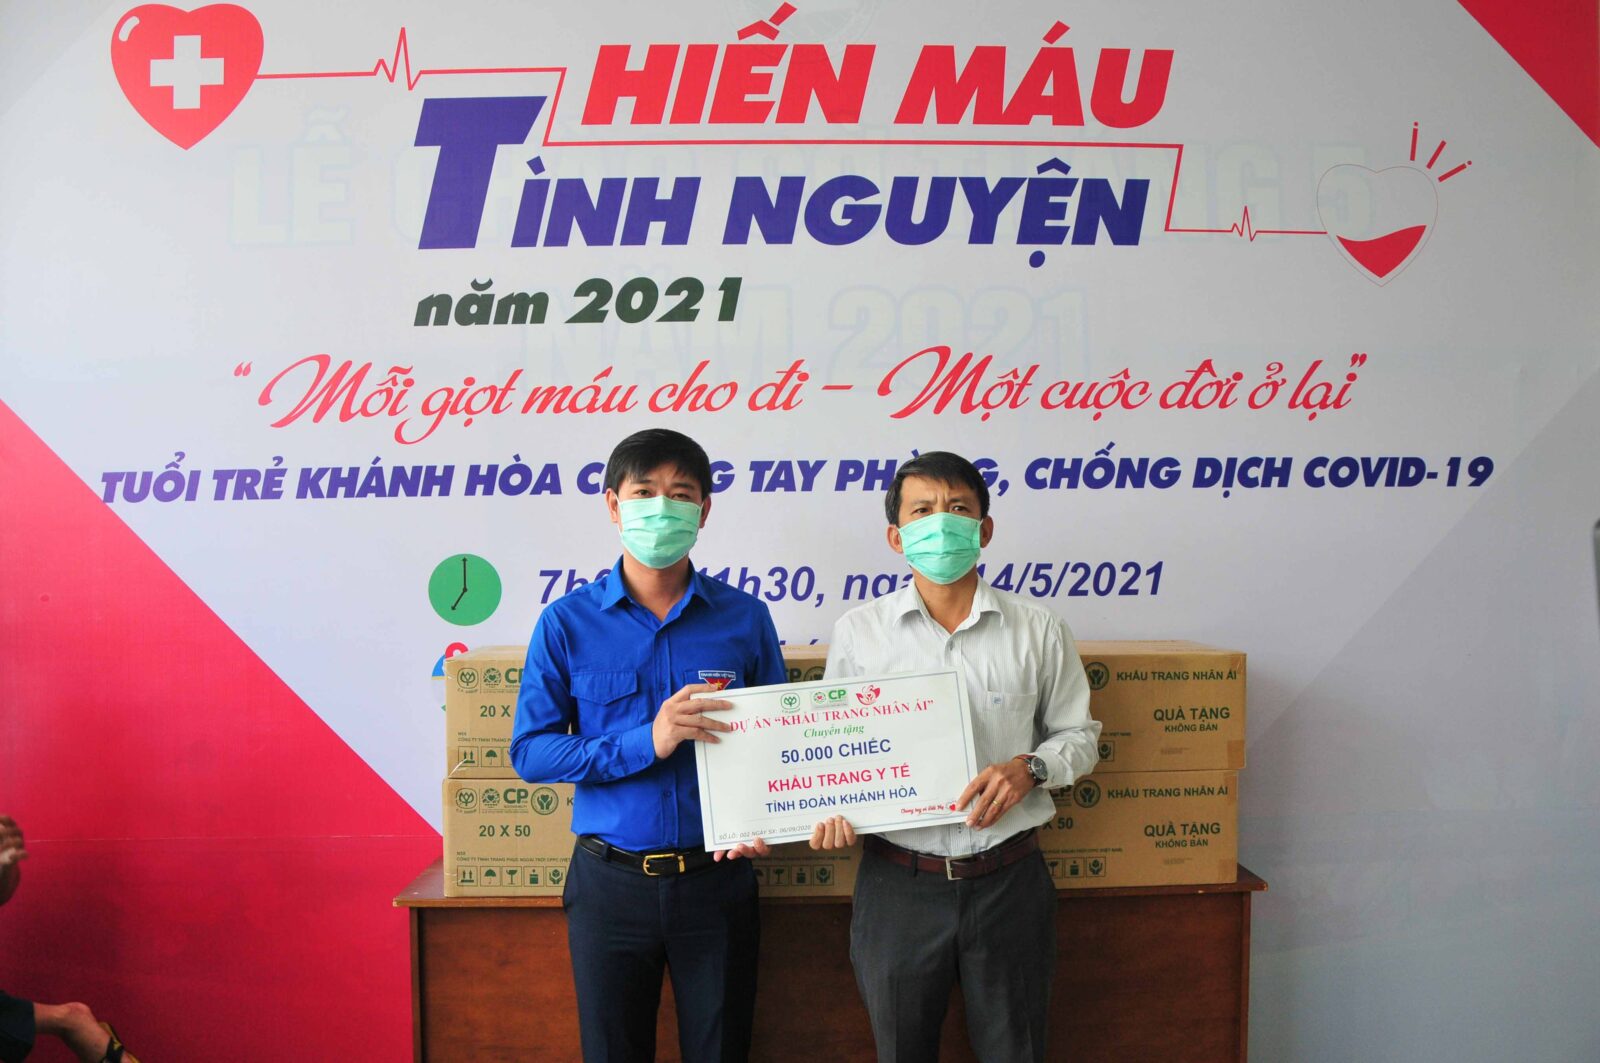 Đại diện Công ty Cổ phần chăn nuôi CP Việt Nam trao tặng 50.000 khẩu trang y tế cho lãnh đạo Tỉnh đoàn